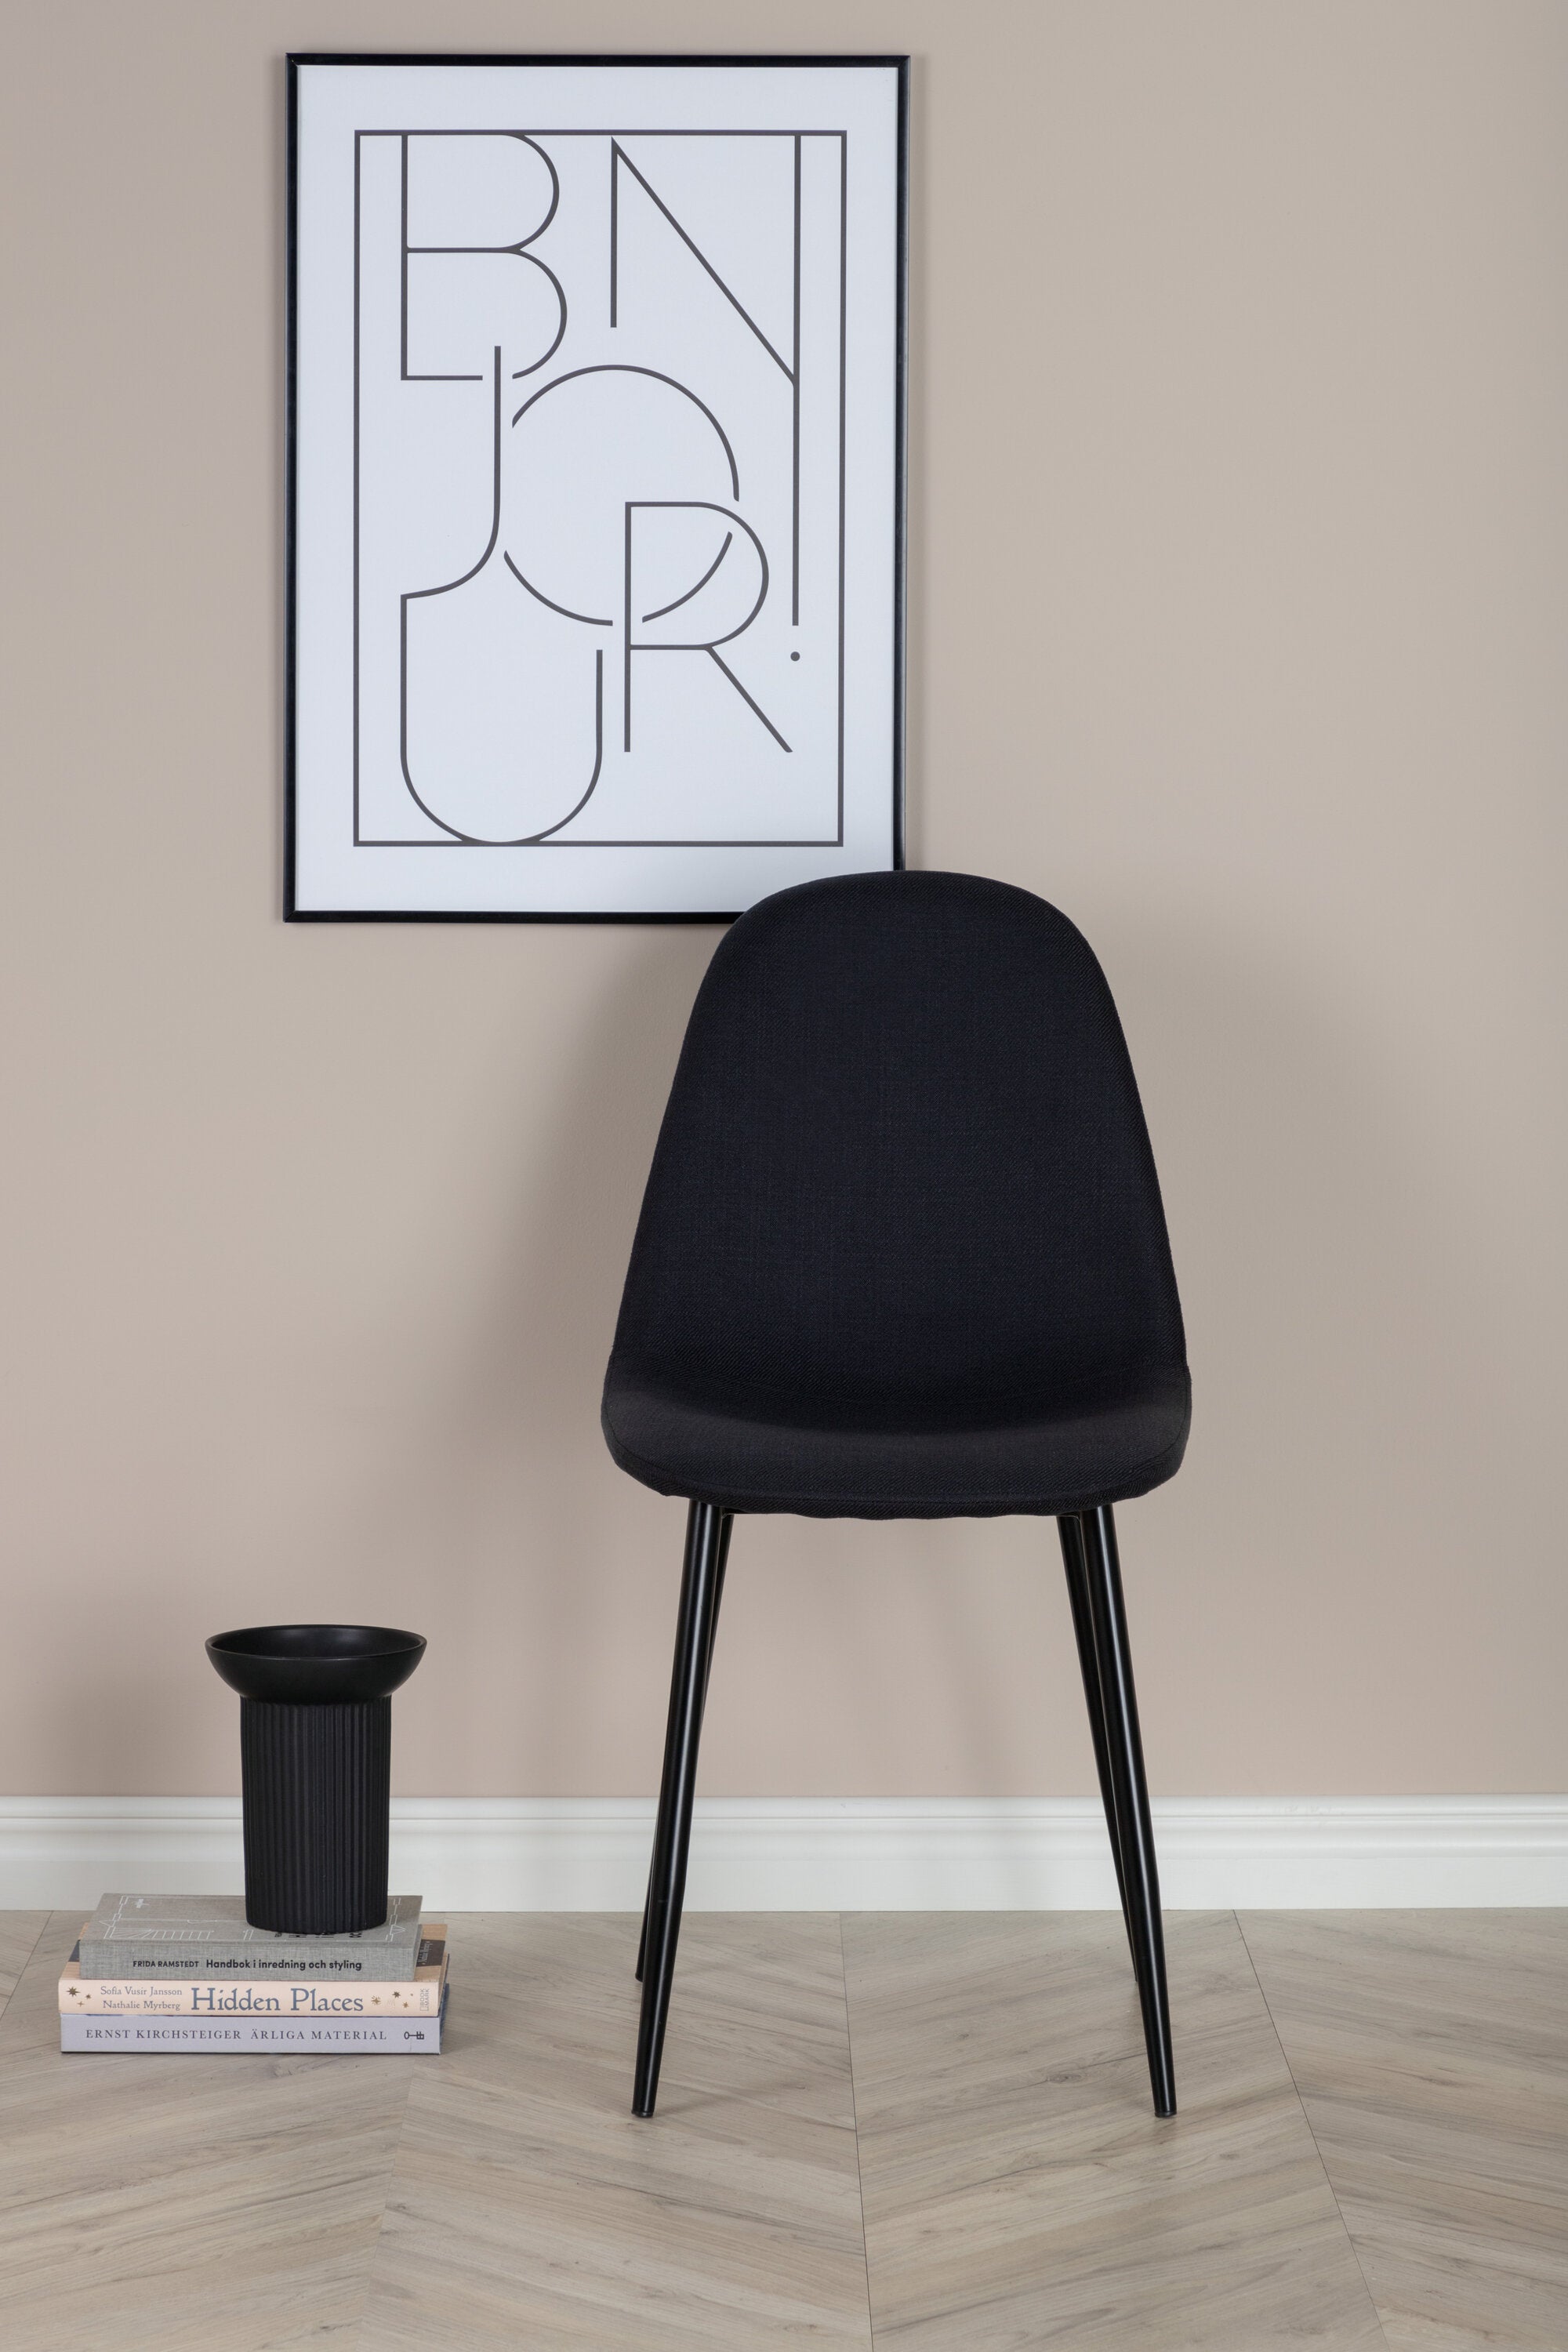 Polar Stuhl in Schwarz/Schwarz präsentiert im Onlineshop von KAQTU Design AG. Stuhl ist von Venture Home